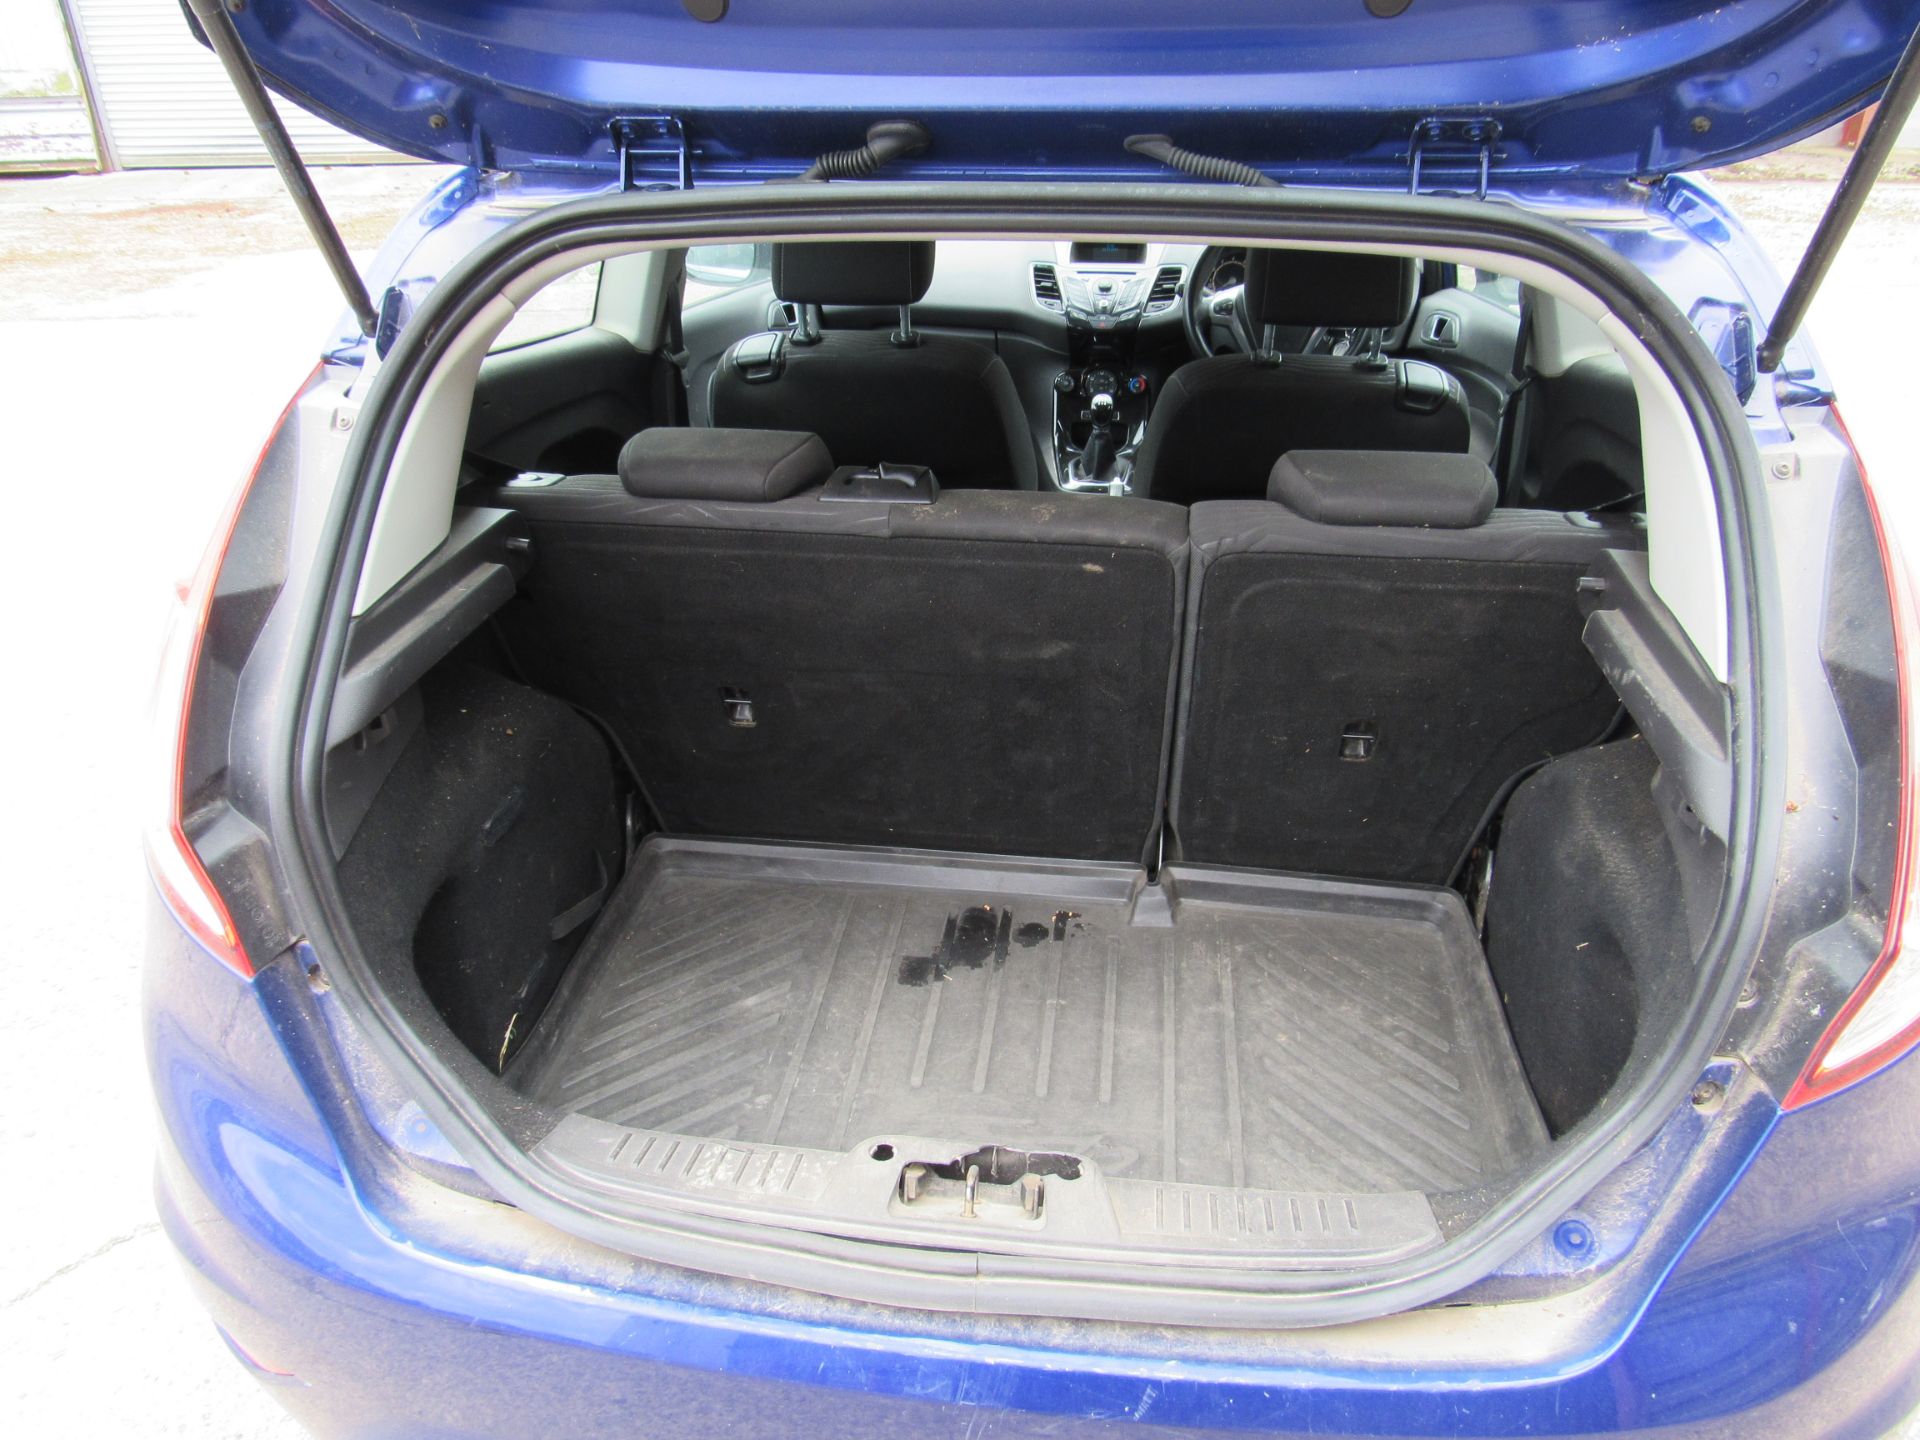 Ford Fiesta Hatchback 1.0 EcoBoost Zetec 3dr, Registration YF14 PVT, Odometer 103,191miles, V5 - Image 7 of 11